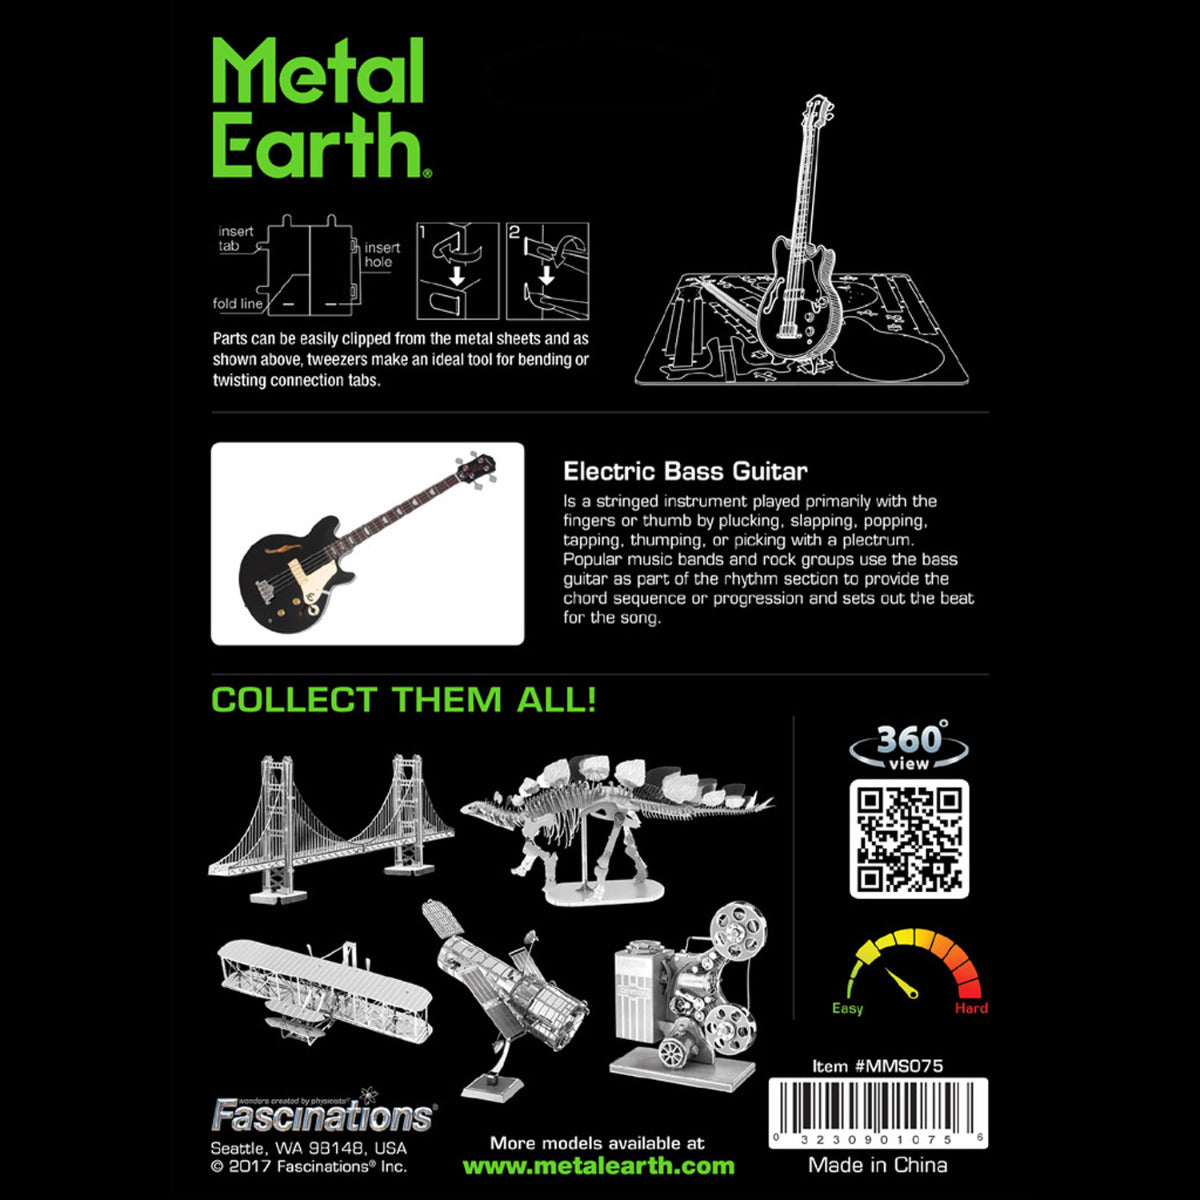 Metal Earth Metallbausätze MMS075 Electric Bass Guitar Elektrische Bass Gitarre Metall Modell